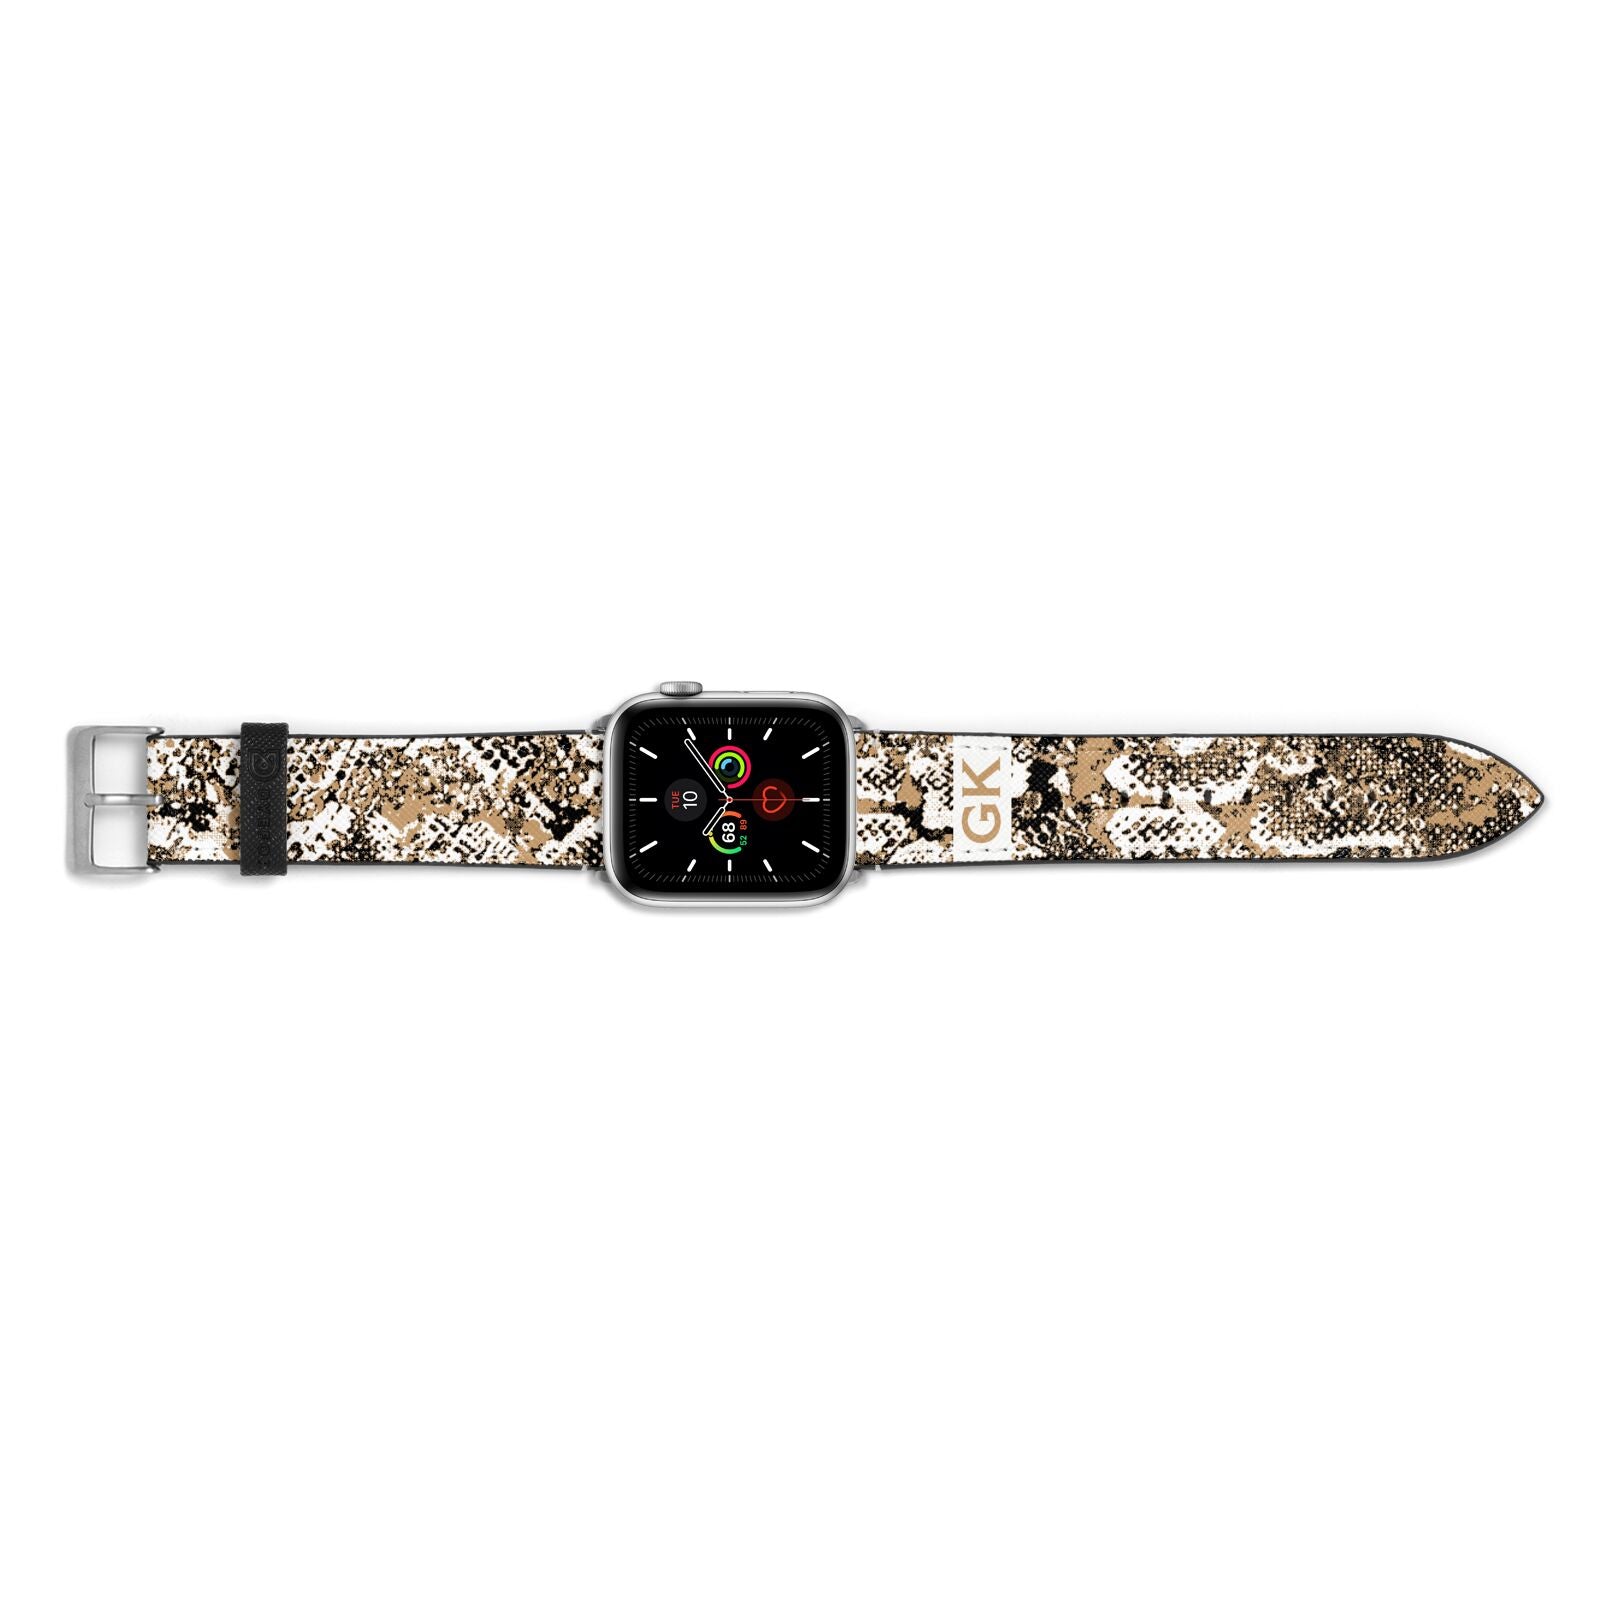 Custom Tan Snakeskin Apple Watch Strap Landscape Image Silver Hardware